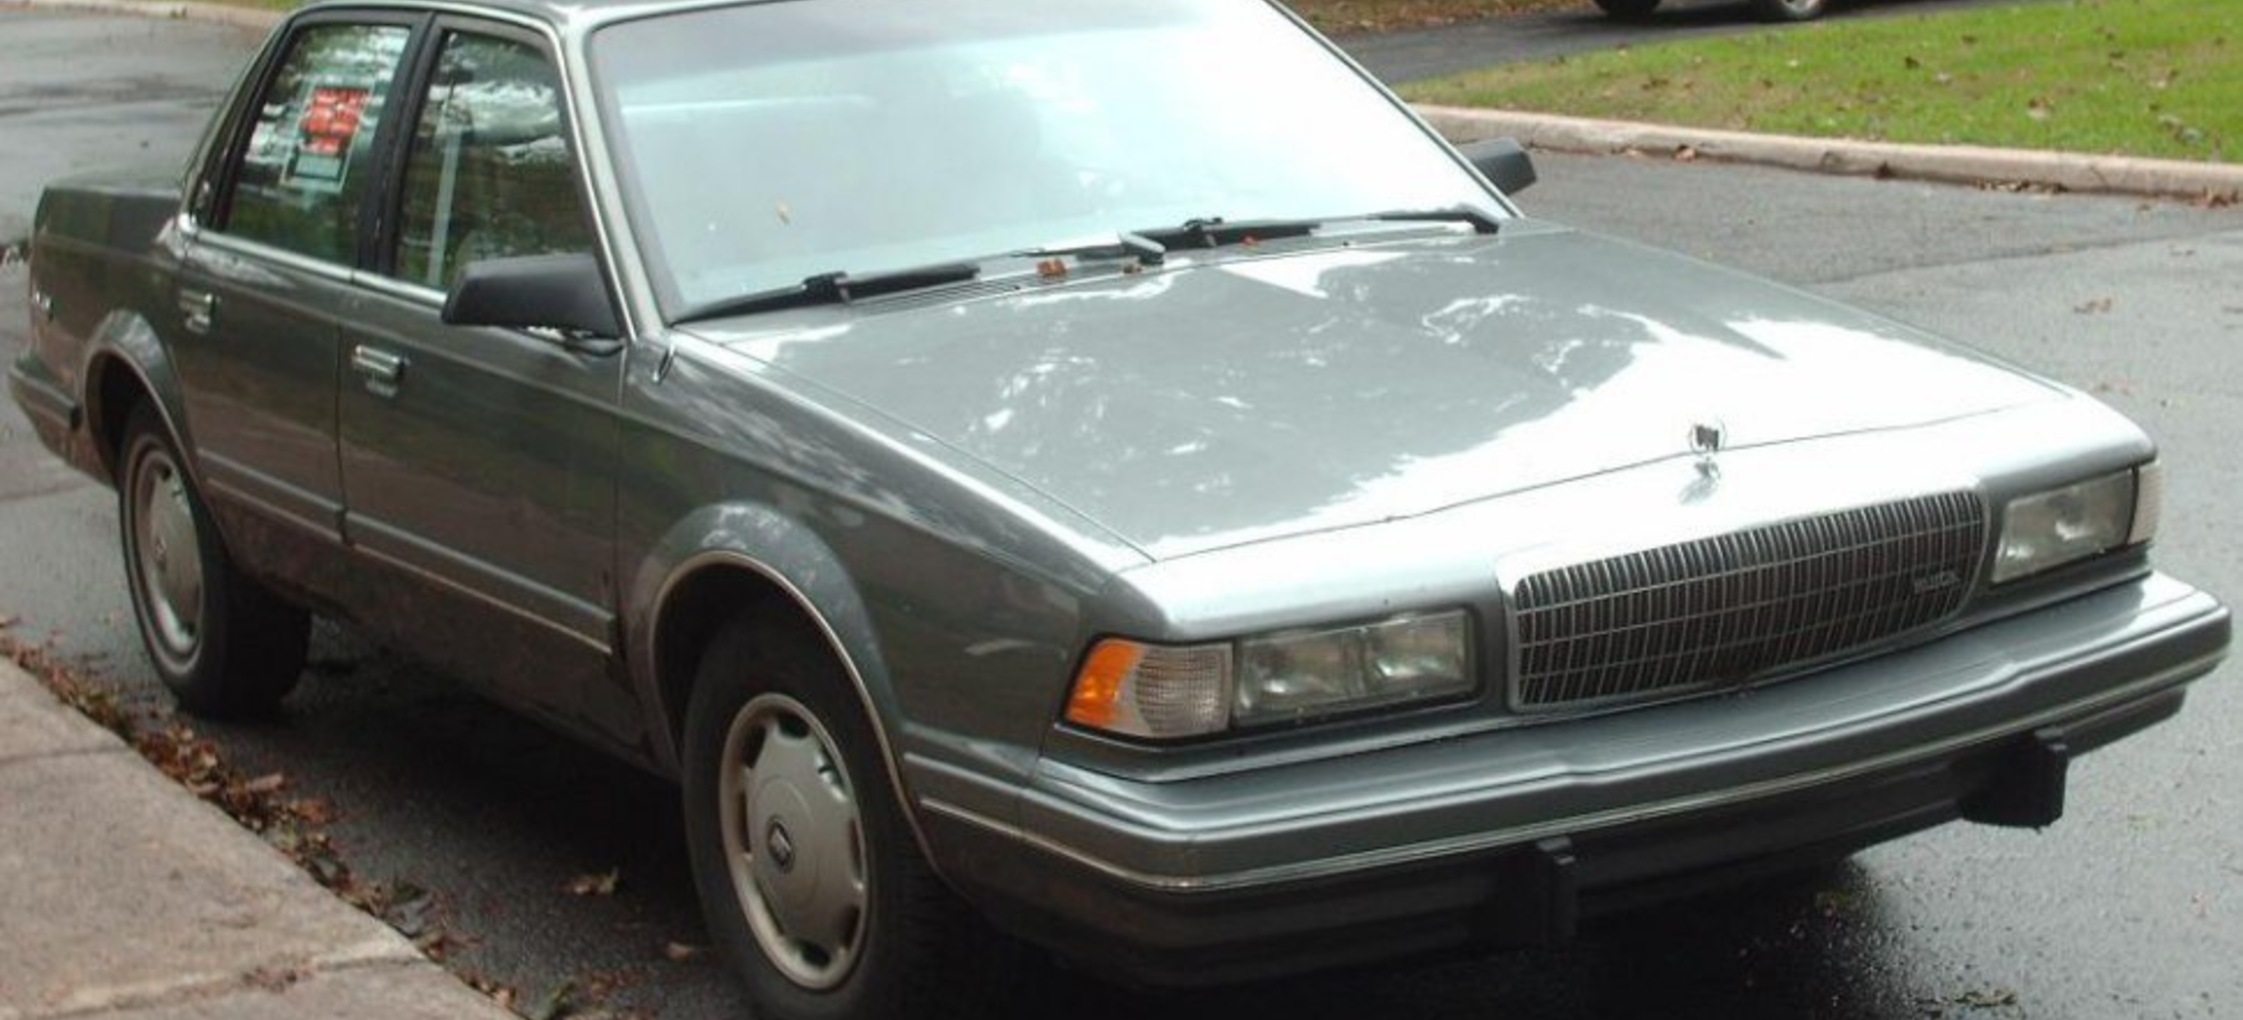 Buick Century 3.1 V6 (162 Hp) 1994, 1995, 1996, 1997 